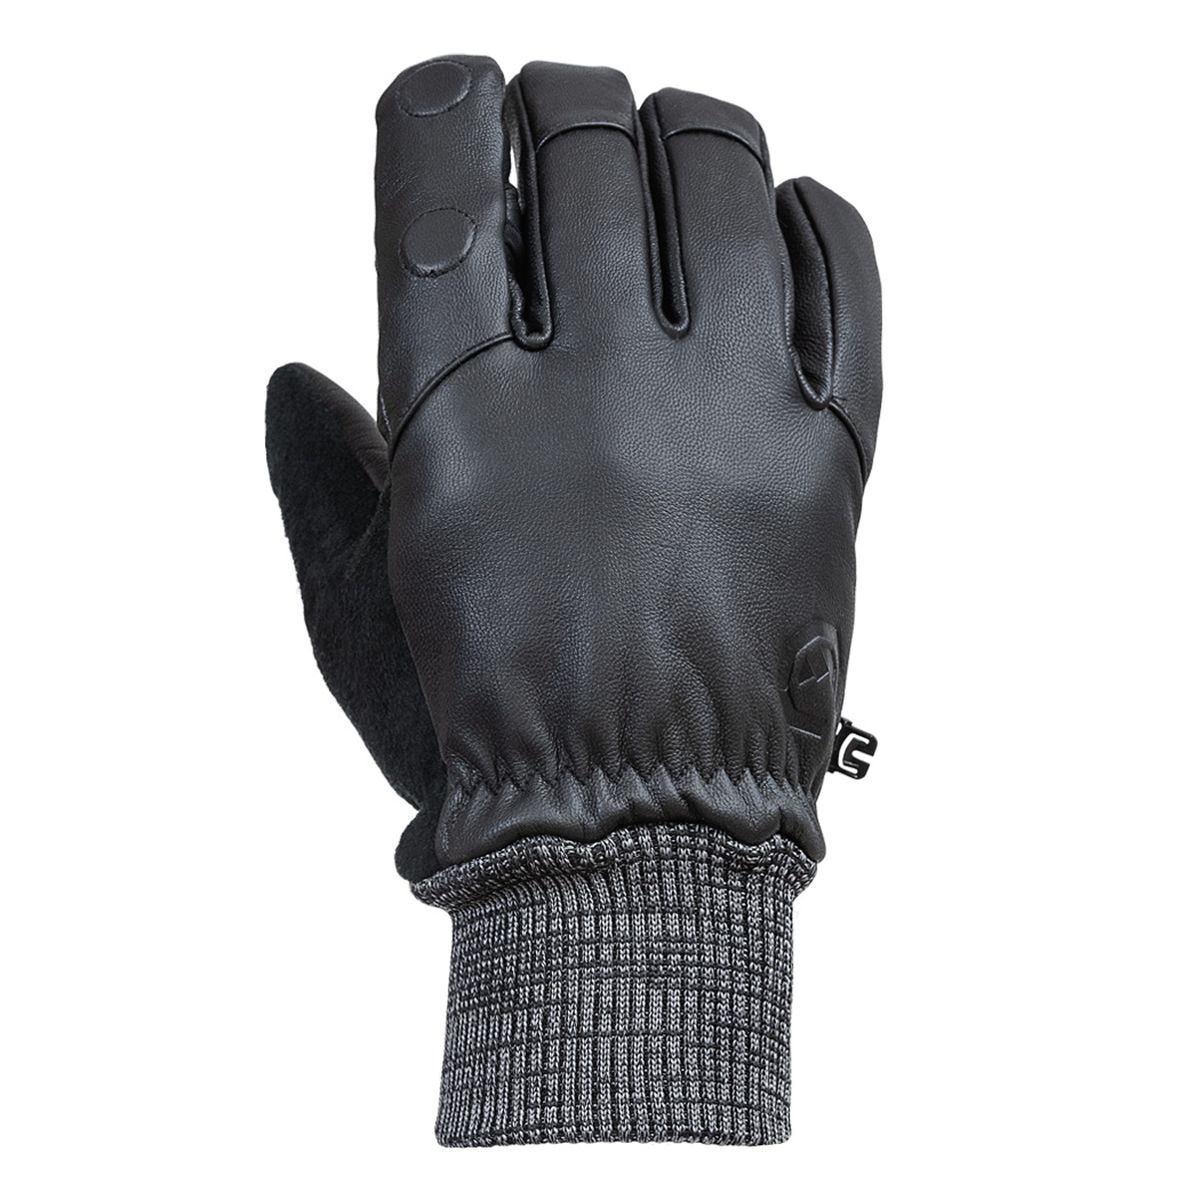 Vallerret Hatchet Leather Glove Black, Leder-Fotohandschuhe XL Schwarz